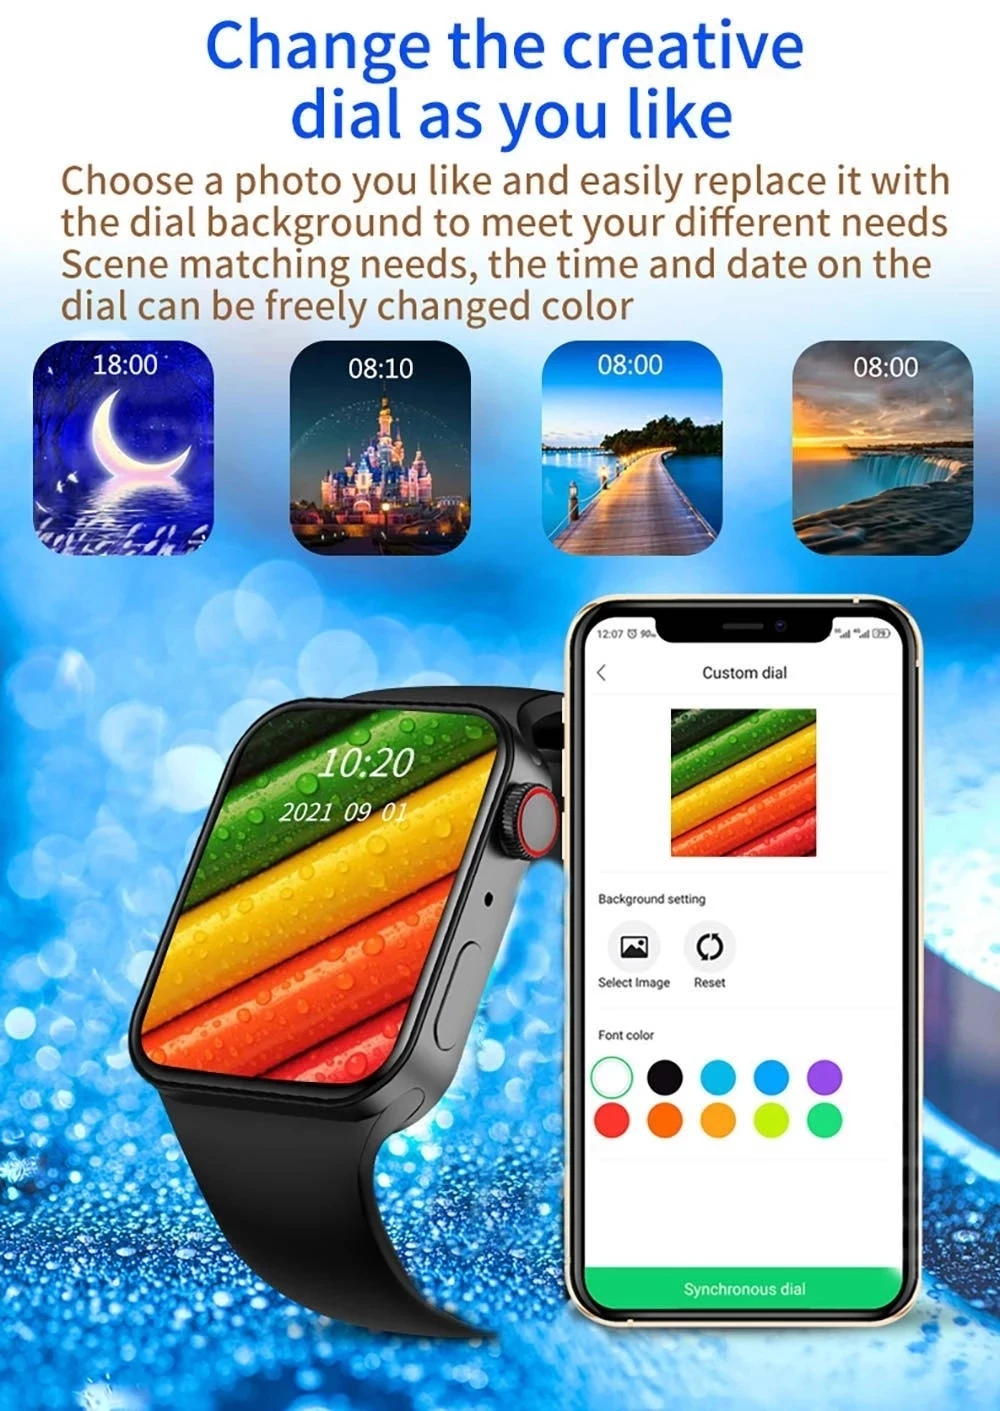 2022 Смарт-часы X8 + для мужчин и женщин 1 75 дюйма большой экран водонепроницаемые